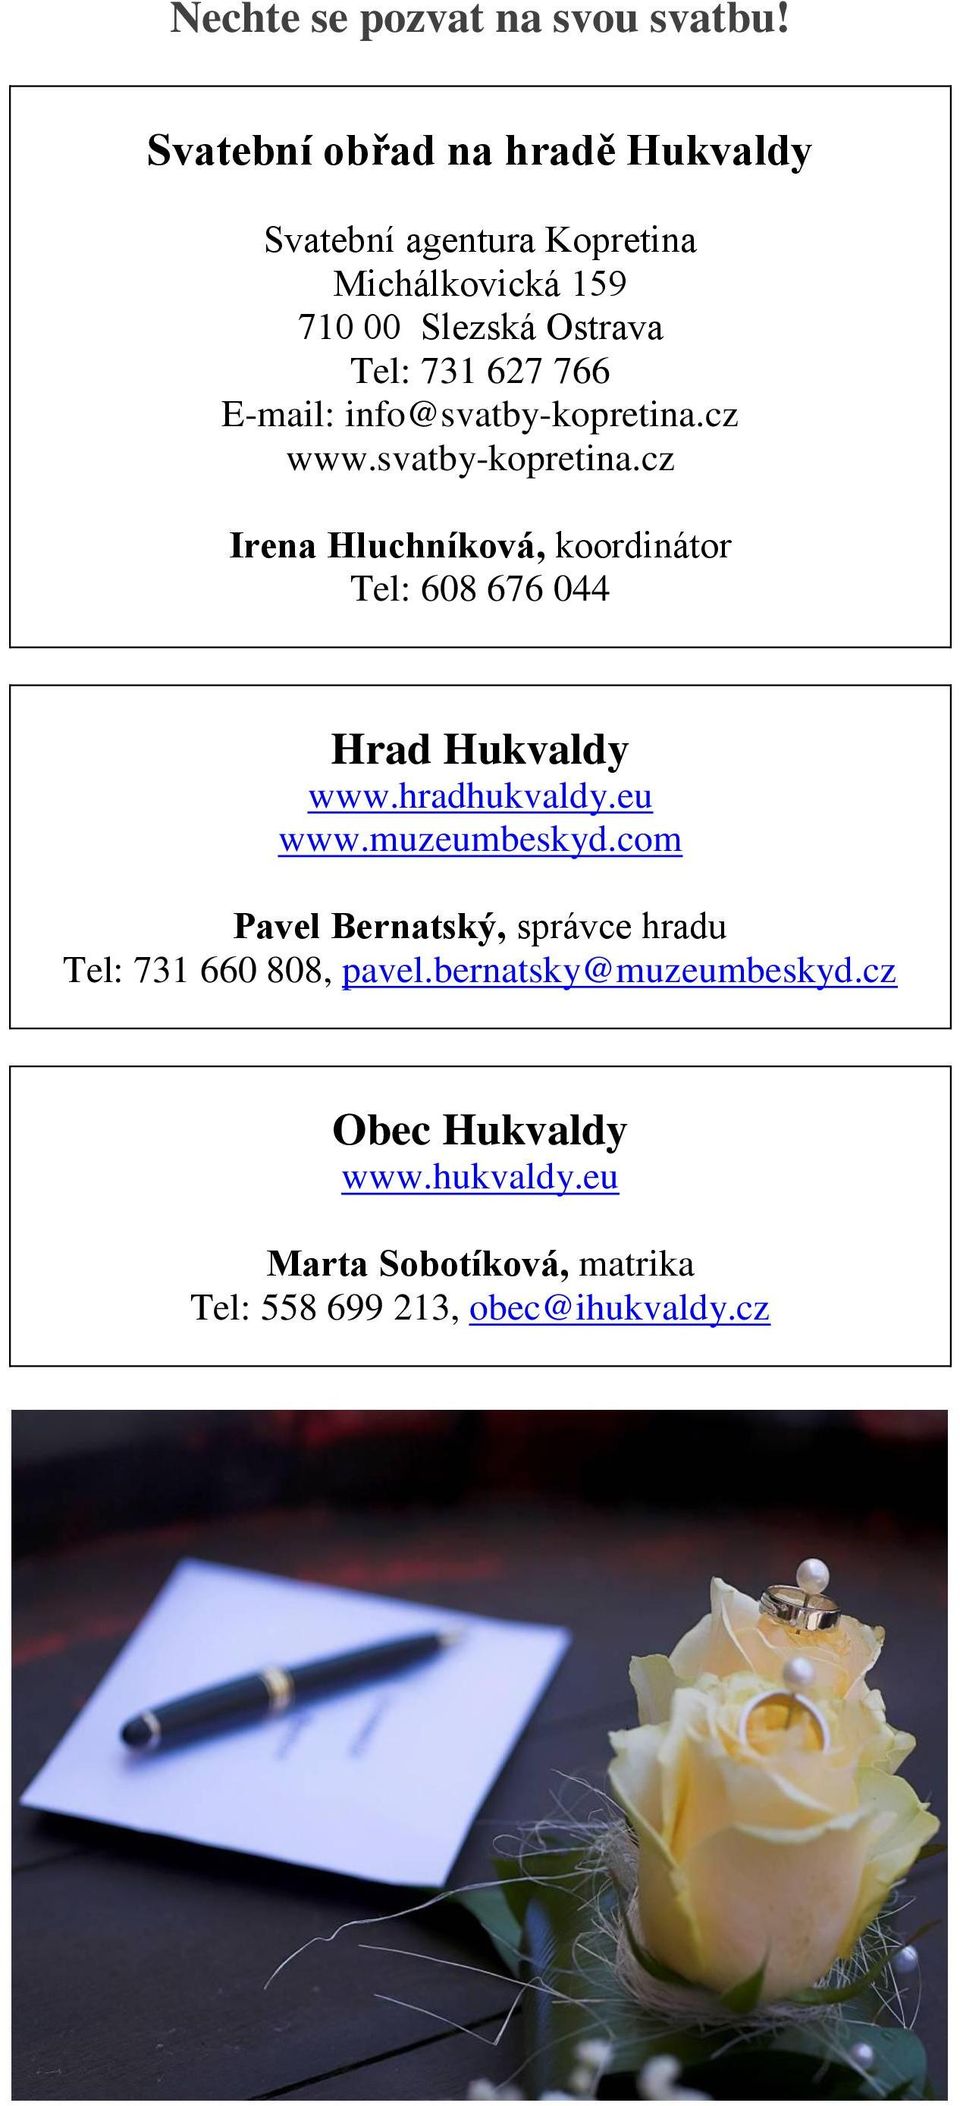 E-mail: info@svatby-kopretina.cz www.svatby-kopretina.cz Irena Hluchníková, koordinátor Tel: 608 676 044 Hrad Hukvaldy www.